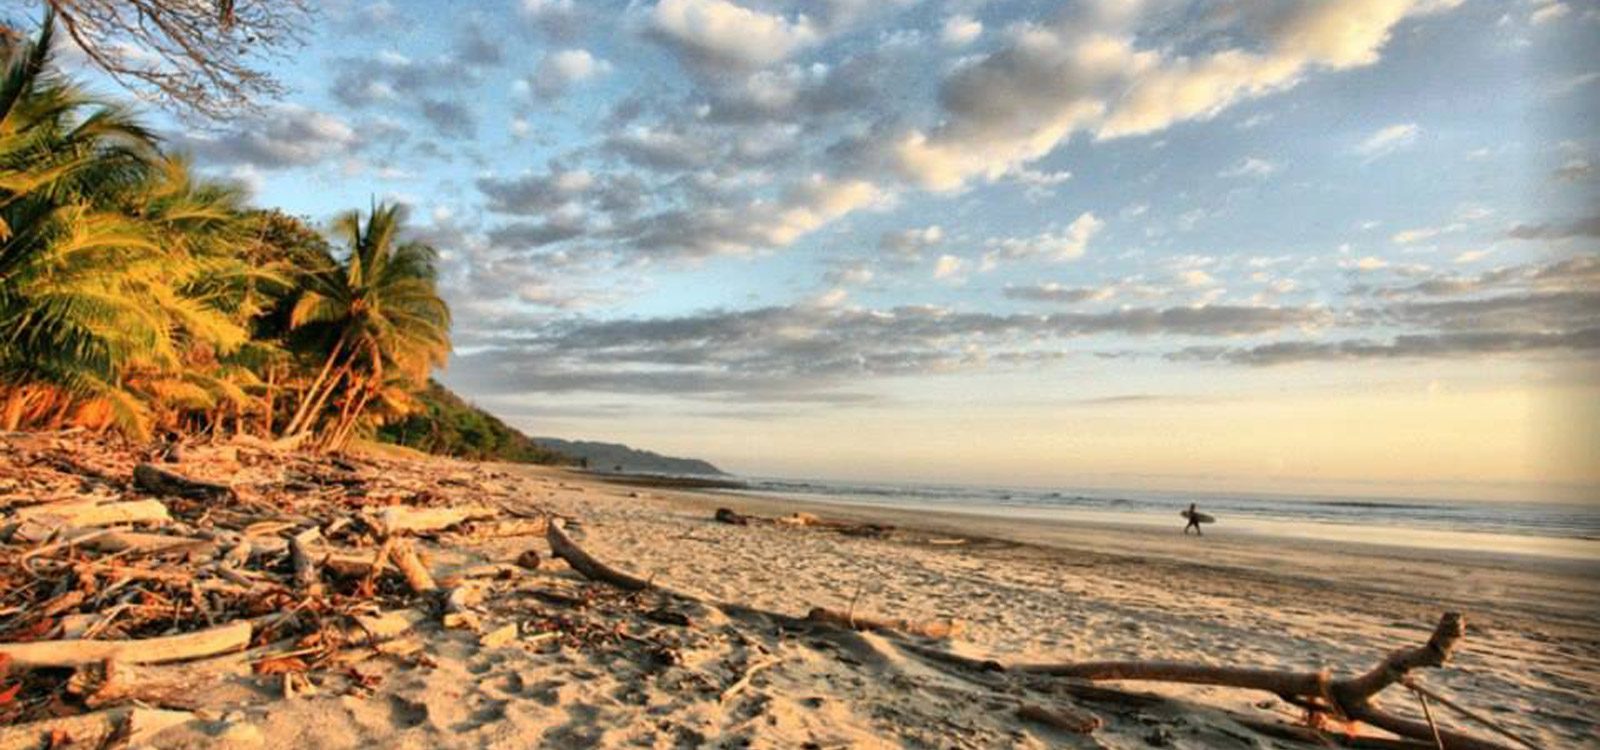 Sunset at Pura Vida Costa Rica Surf Resort